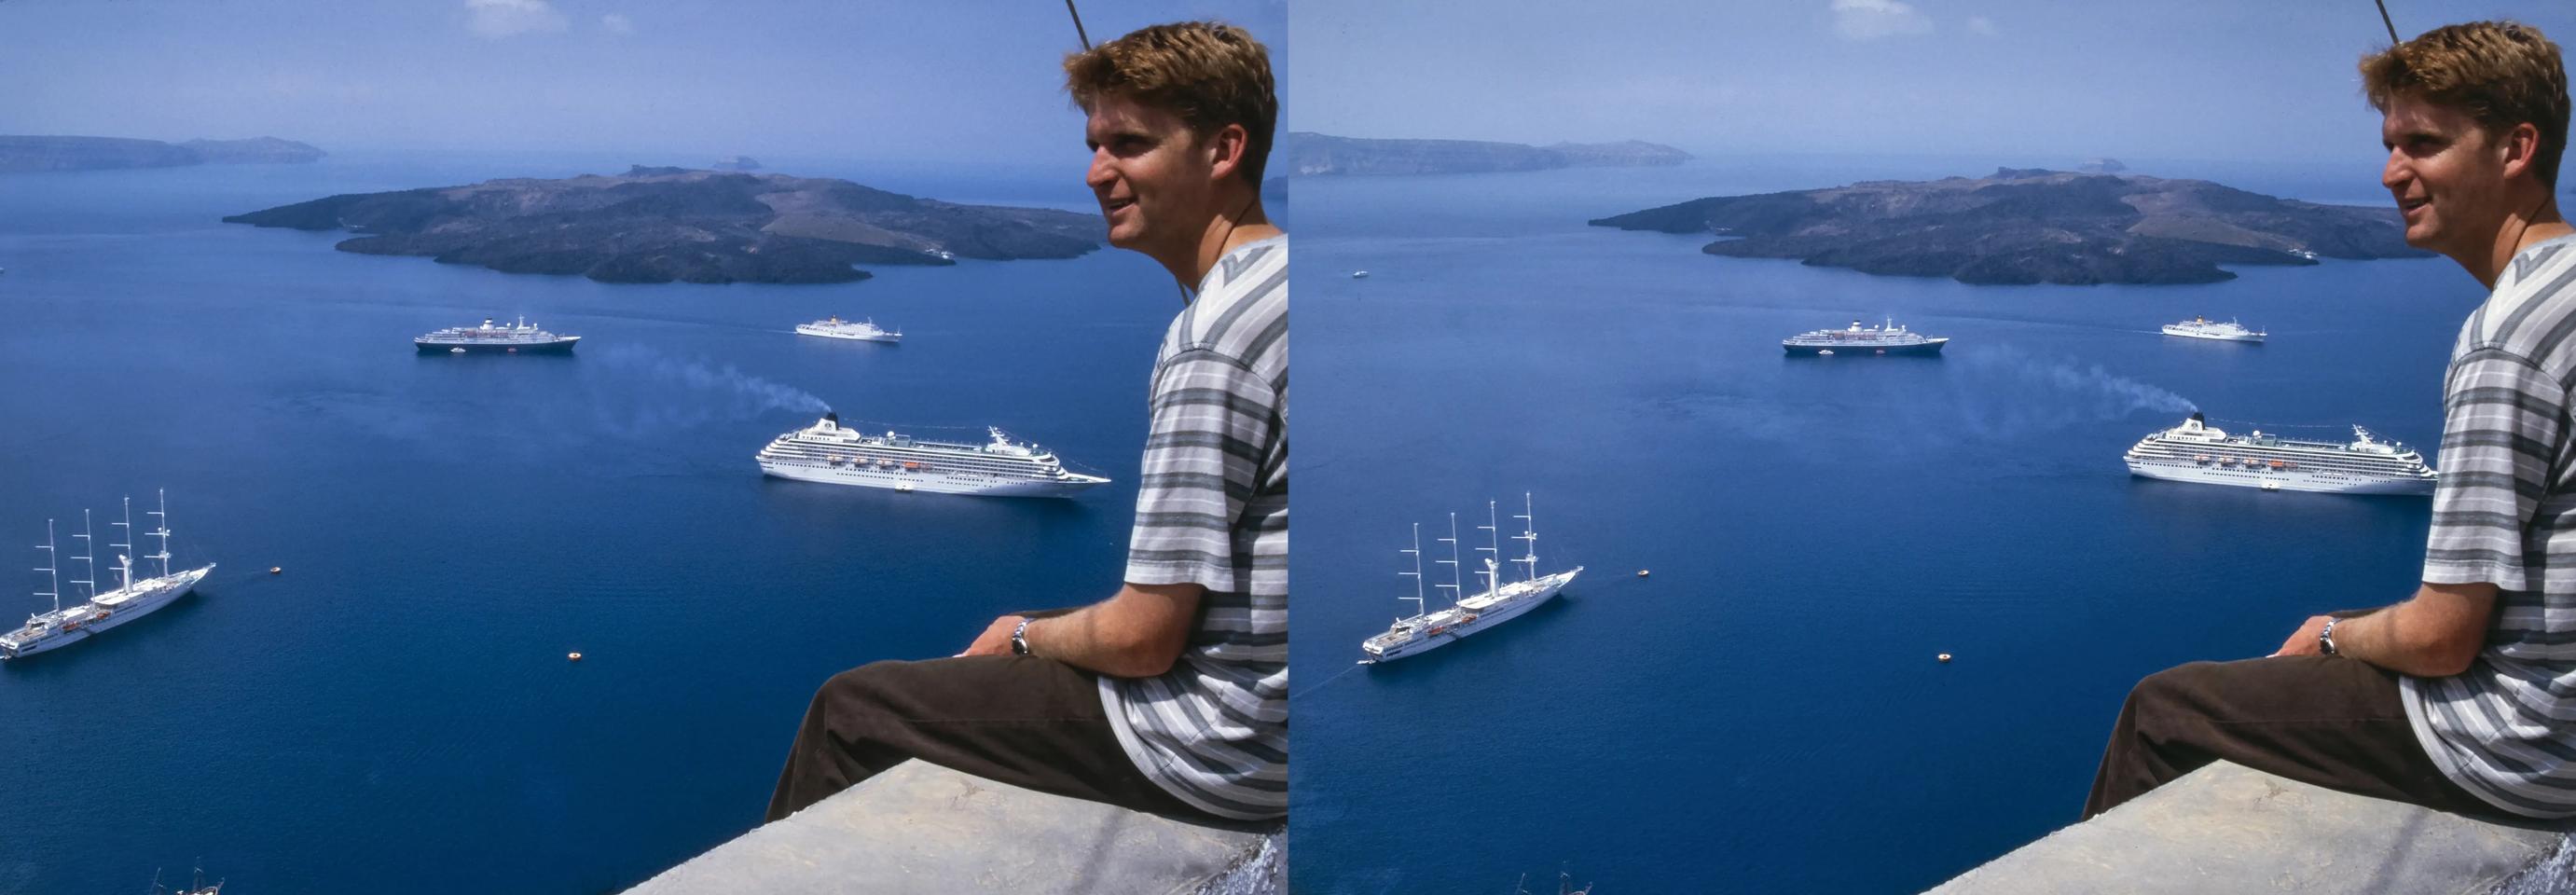 Paul, Santorini, Greece 1998